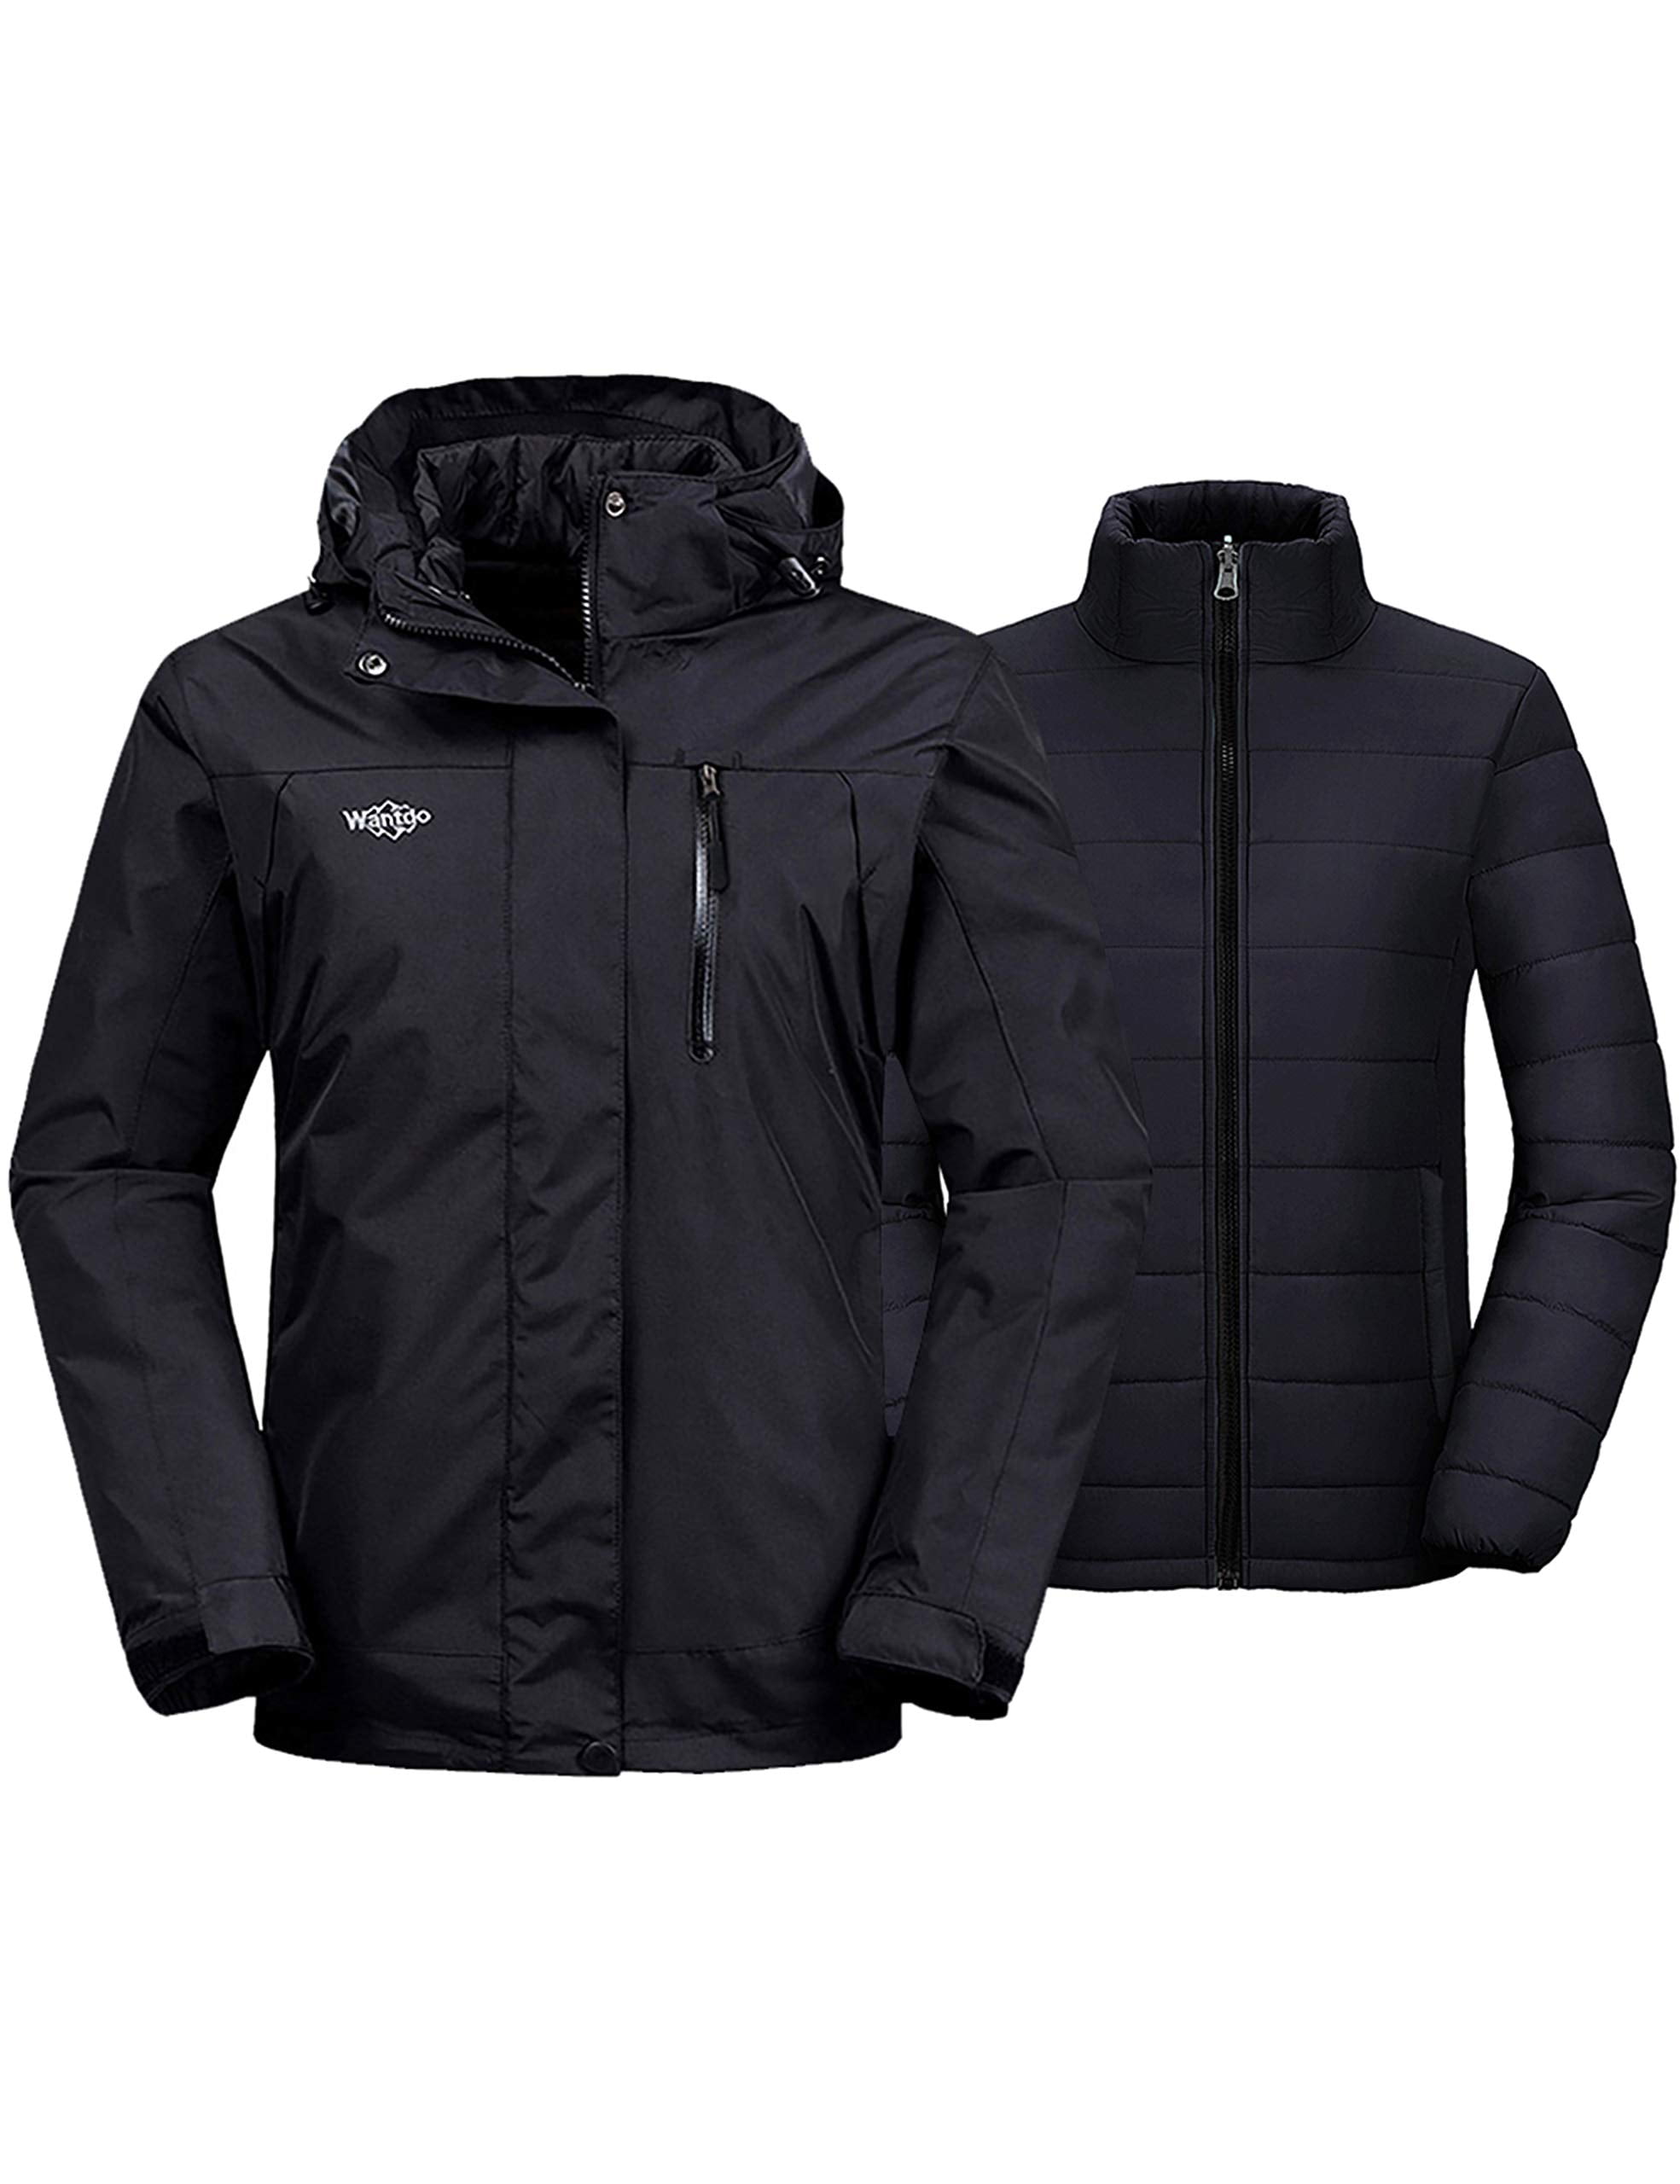 Wantdo Mens 3 in 1 Waterproof Ski Jacket Warm Winter Snow Coat Puffer Rain Jacket